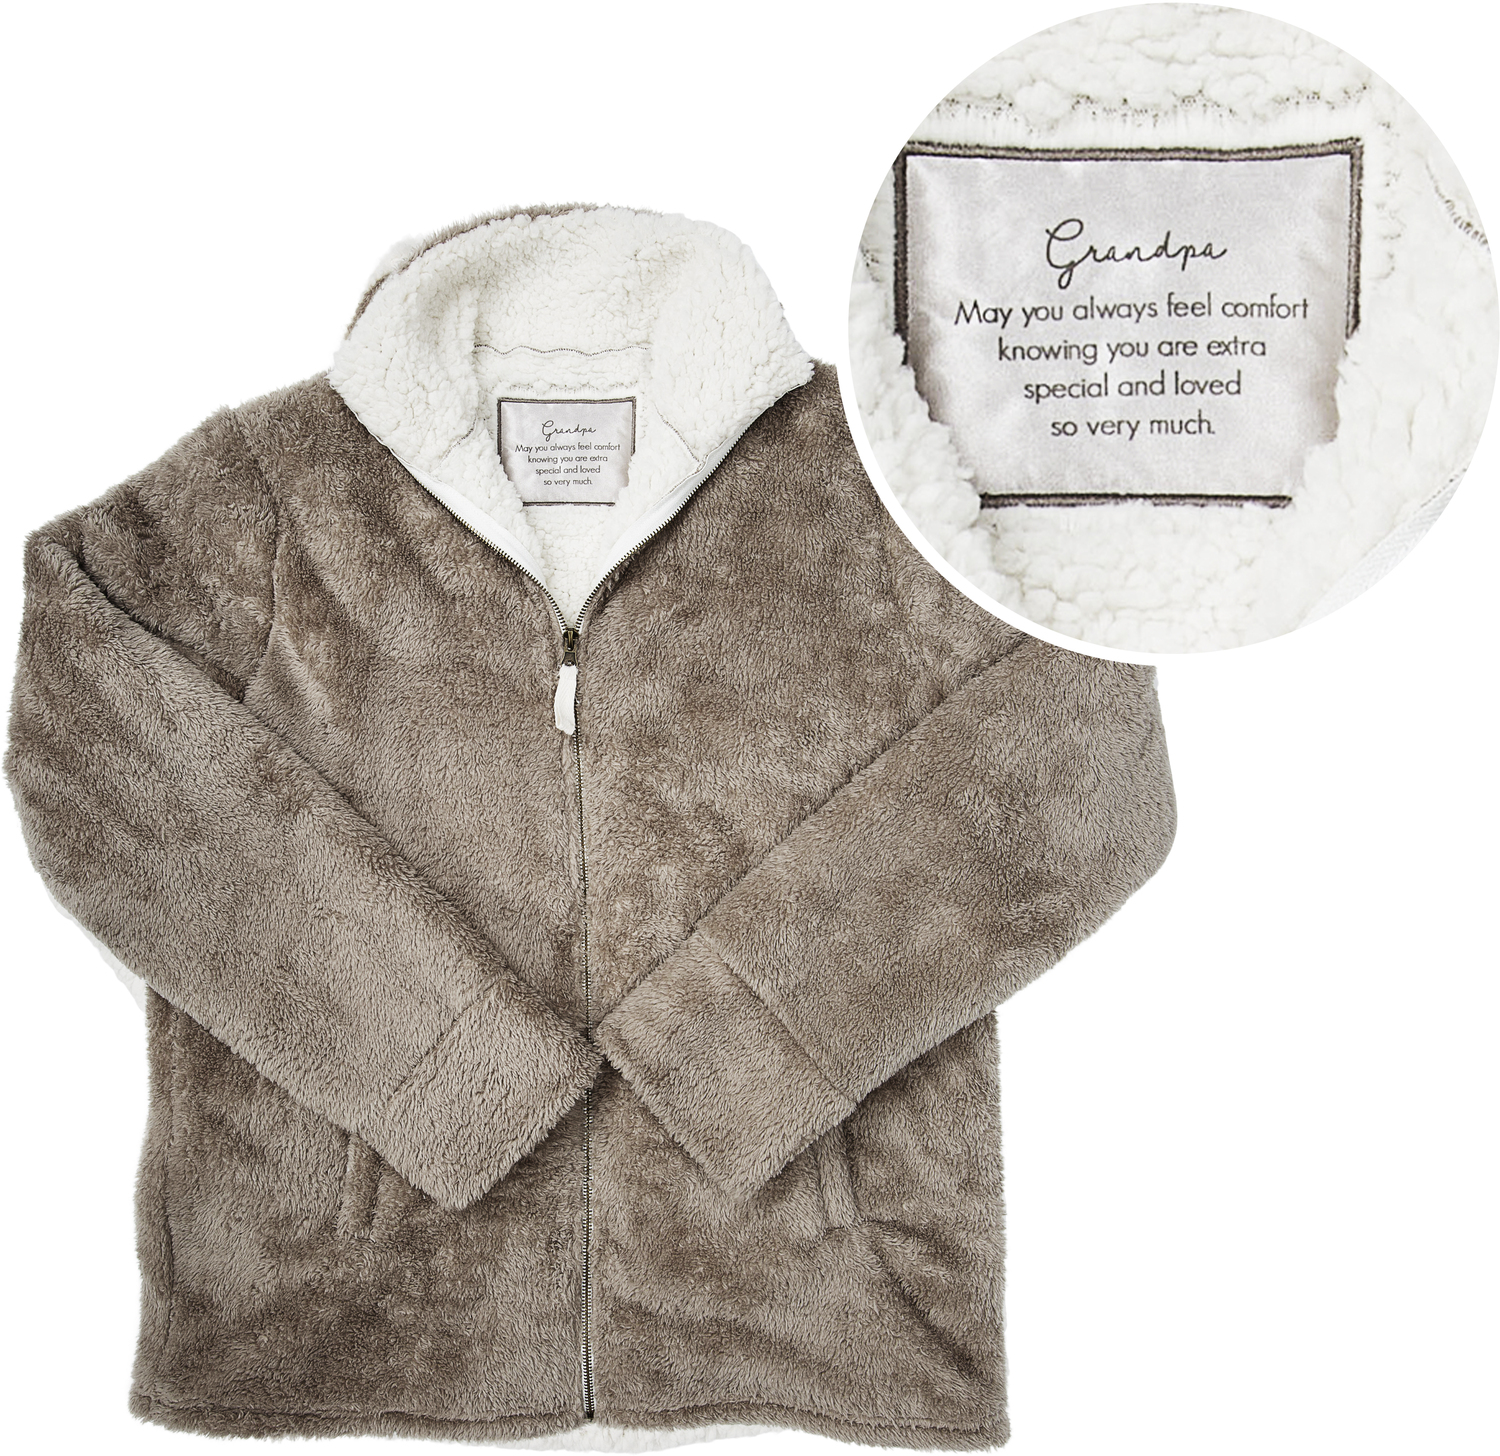 Grandpa by Comfort Collection - Grandpa - S/M Men's Fleece Full Zip Sweatshirt